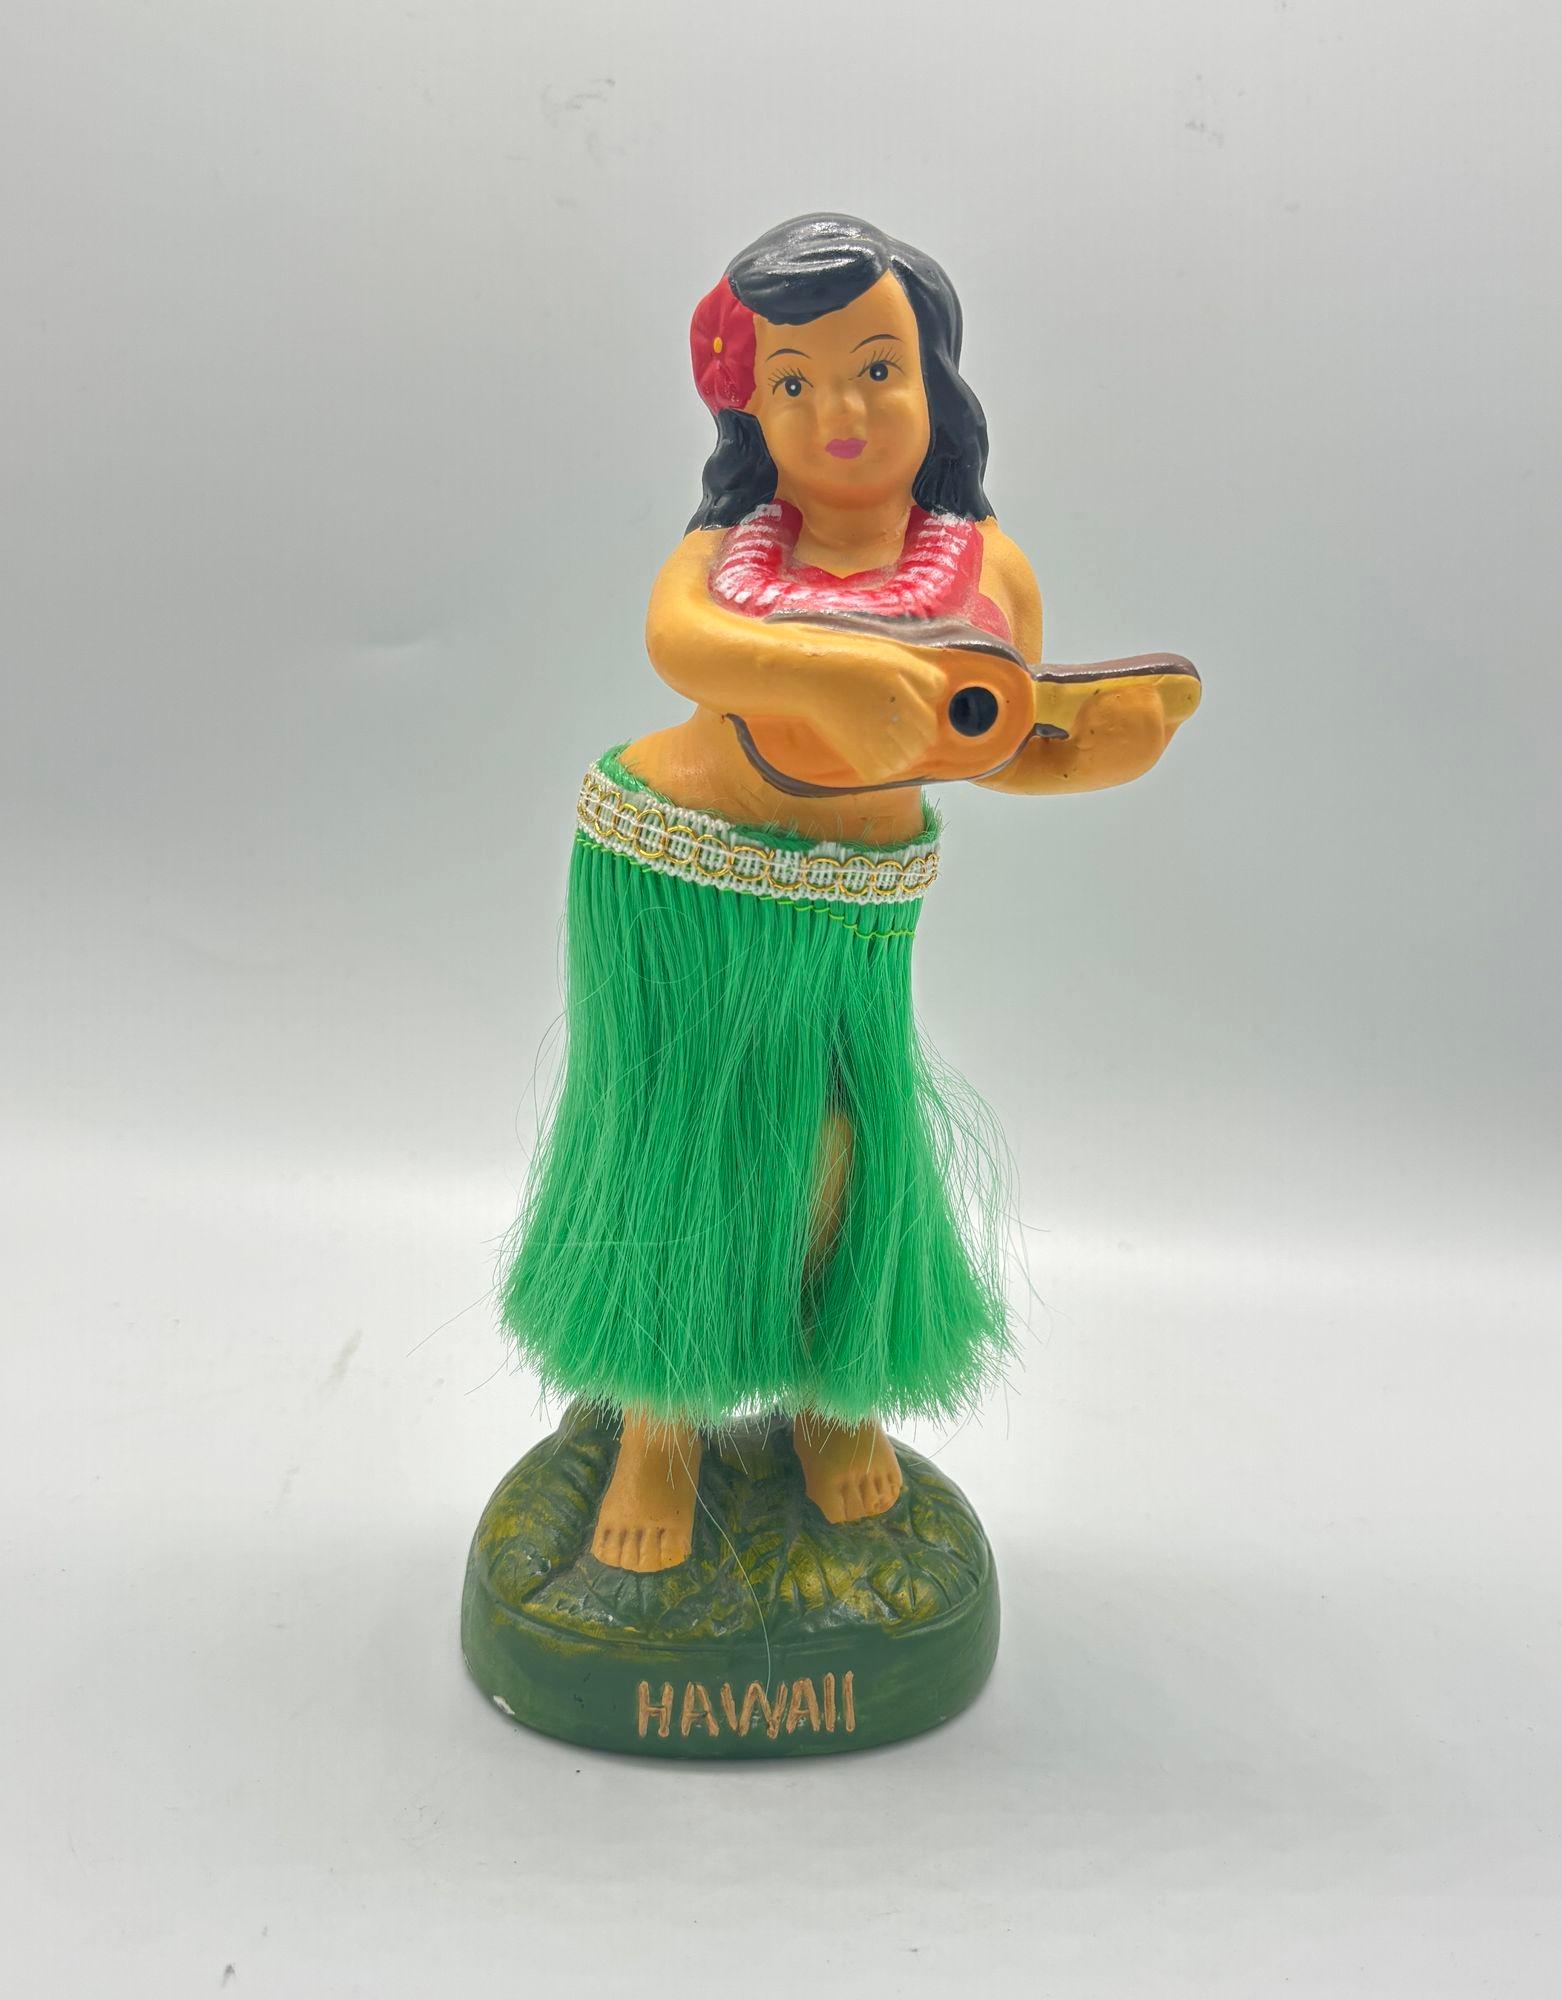 Ein keramisches hawaiianisches Mädchen Wackelfigur Darstellung eines jungen Mädchens in traditioneller hawaiianischer Kleidung gekleidet, umfasst ein buntes Blumenkleid, eine Blume lei um den Hals, und eine Blume in ihrem Haar. Sie steht auf einem